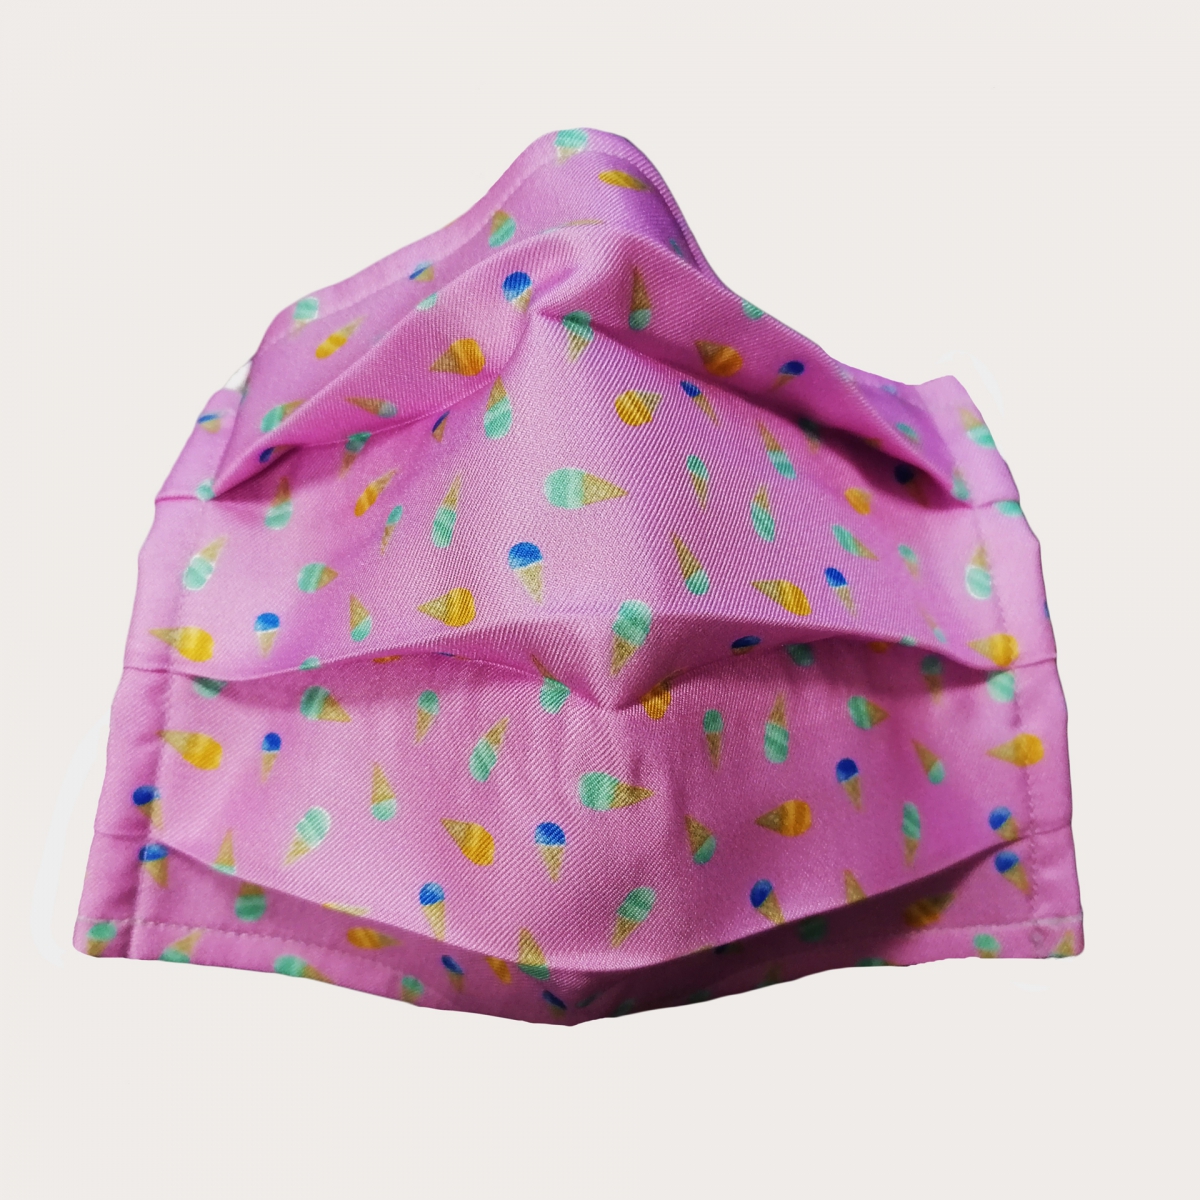 StyleMask Mascherina copri viso bambino in seta rosa con coni gelato 